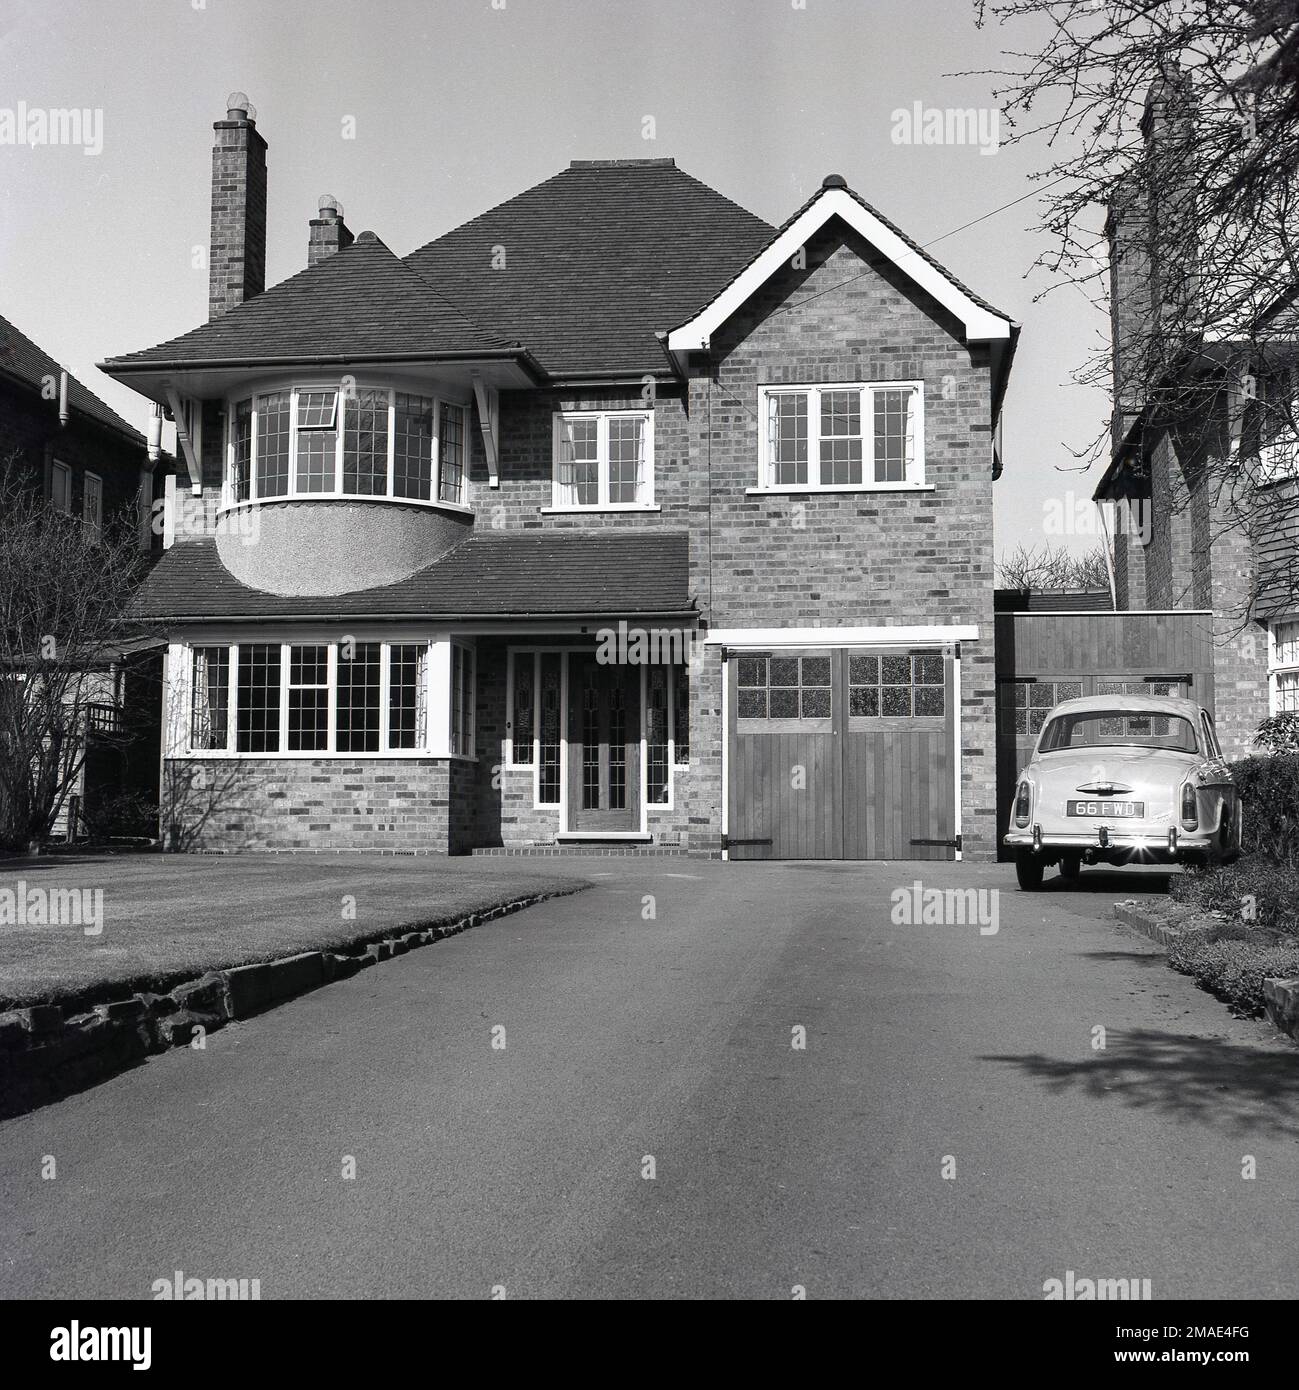 1960er, historisch, Vorderansicht eines großen Vorstadthauses, mit interner Garage, mit Holztüren, England, Großbritannien. Ein Woseley Auto der Ära parkt in der Auffahrt vor der zweiten Garage, die an der Seite des Hauses gebaut wurde und an das benachbarte Grundstück angeschlossen ist. Stockfoto